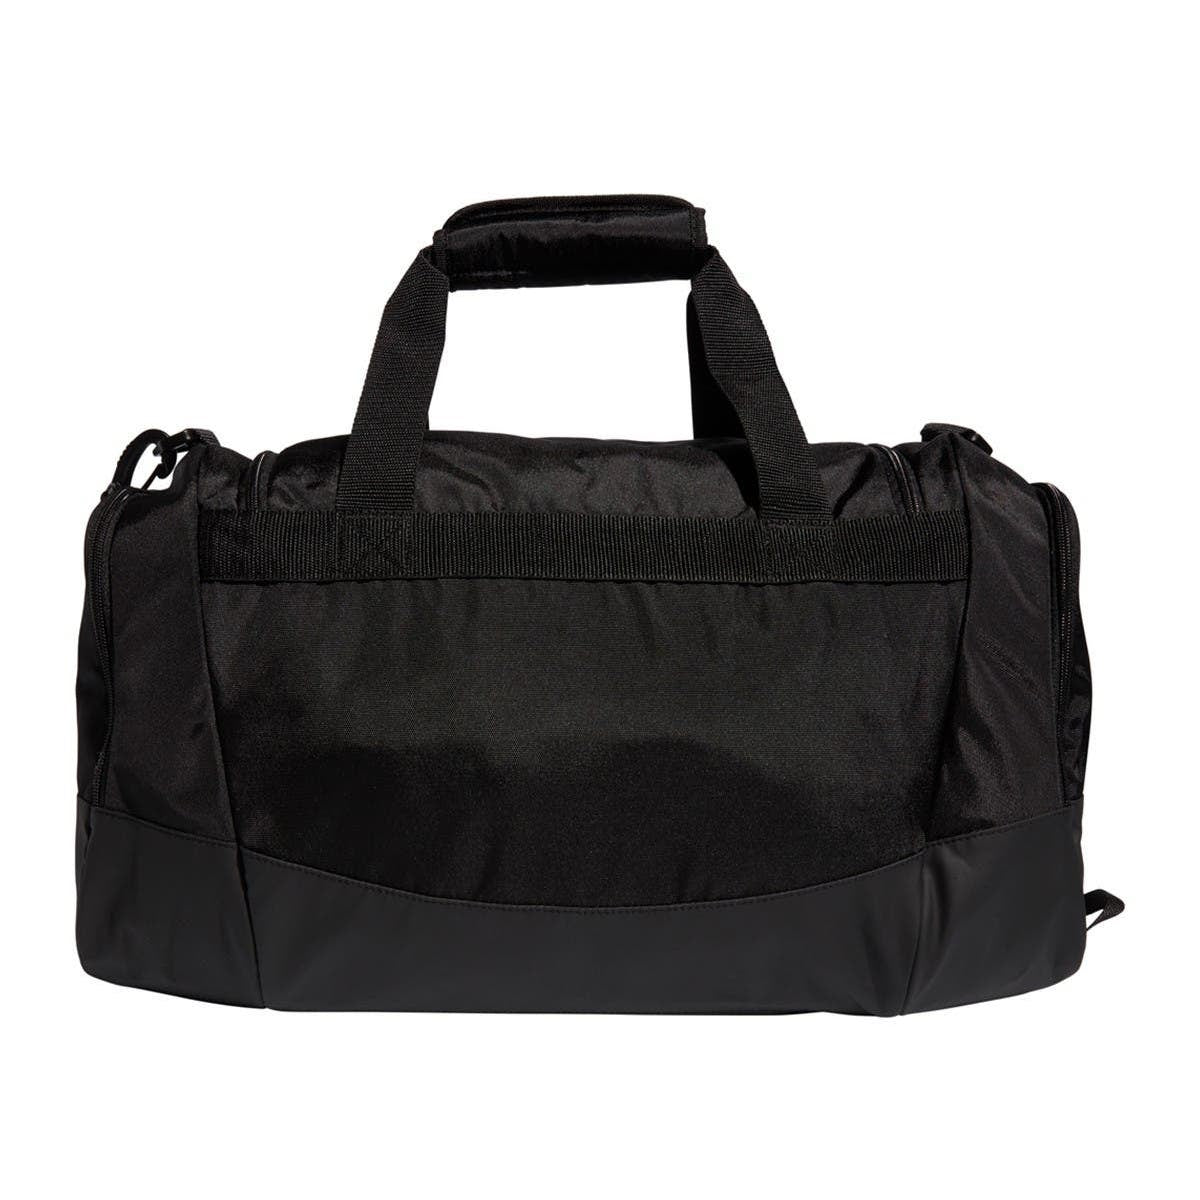 Adidas Defender IV Small Duffel Bag - Black-White (Back)